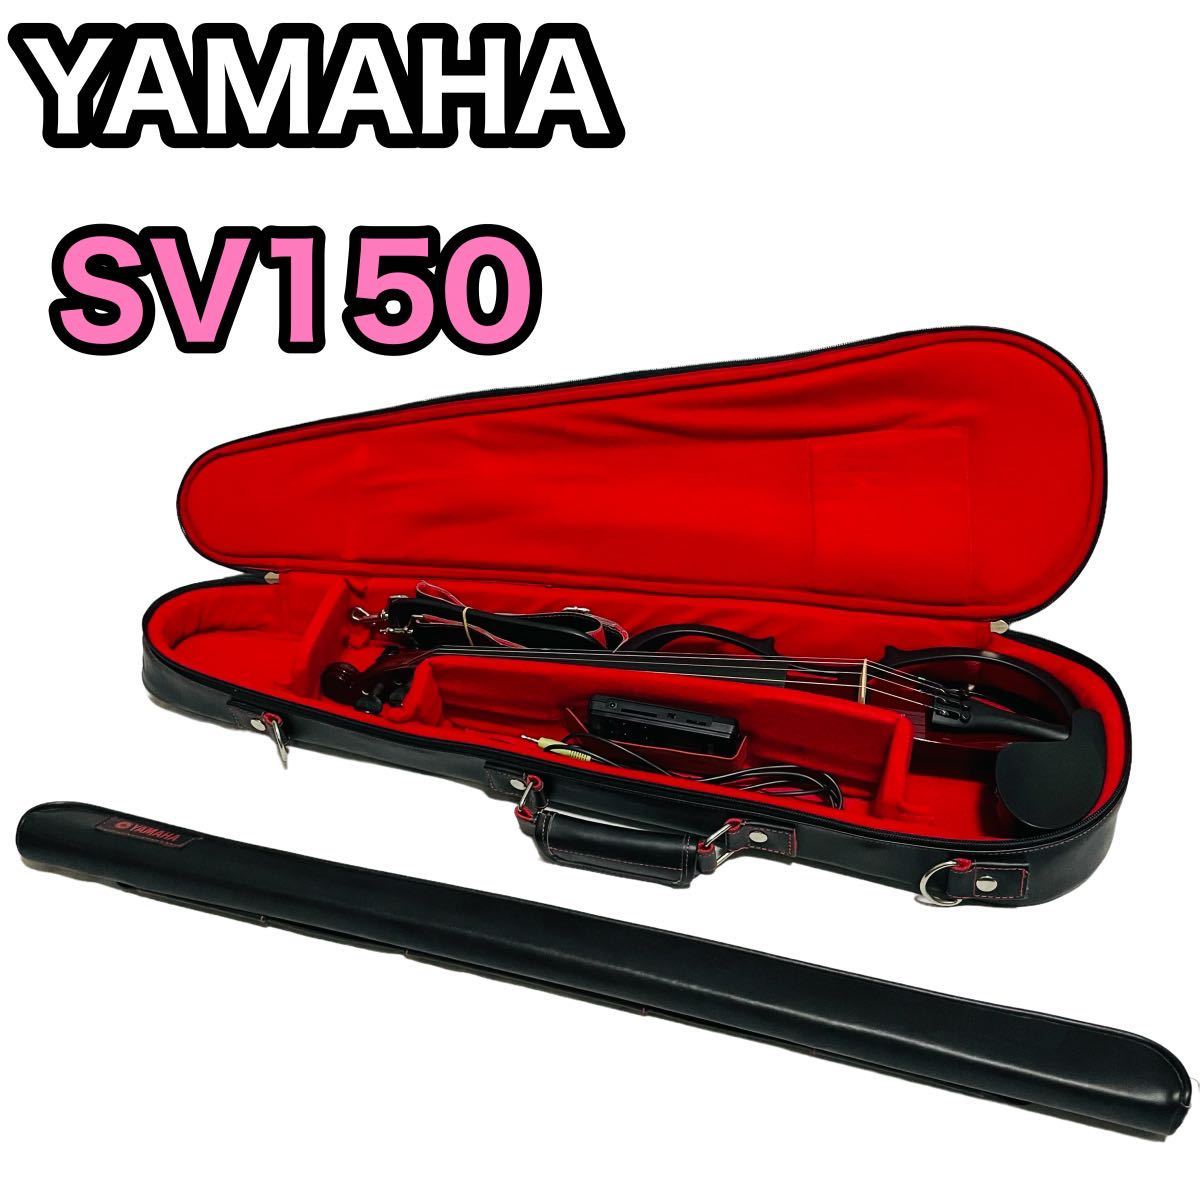 ヤマハ YAMAHA サイレントヴァイオリン ブラウン SV150